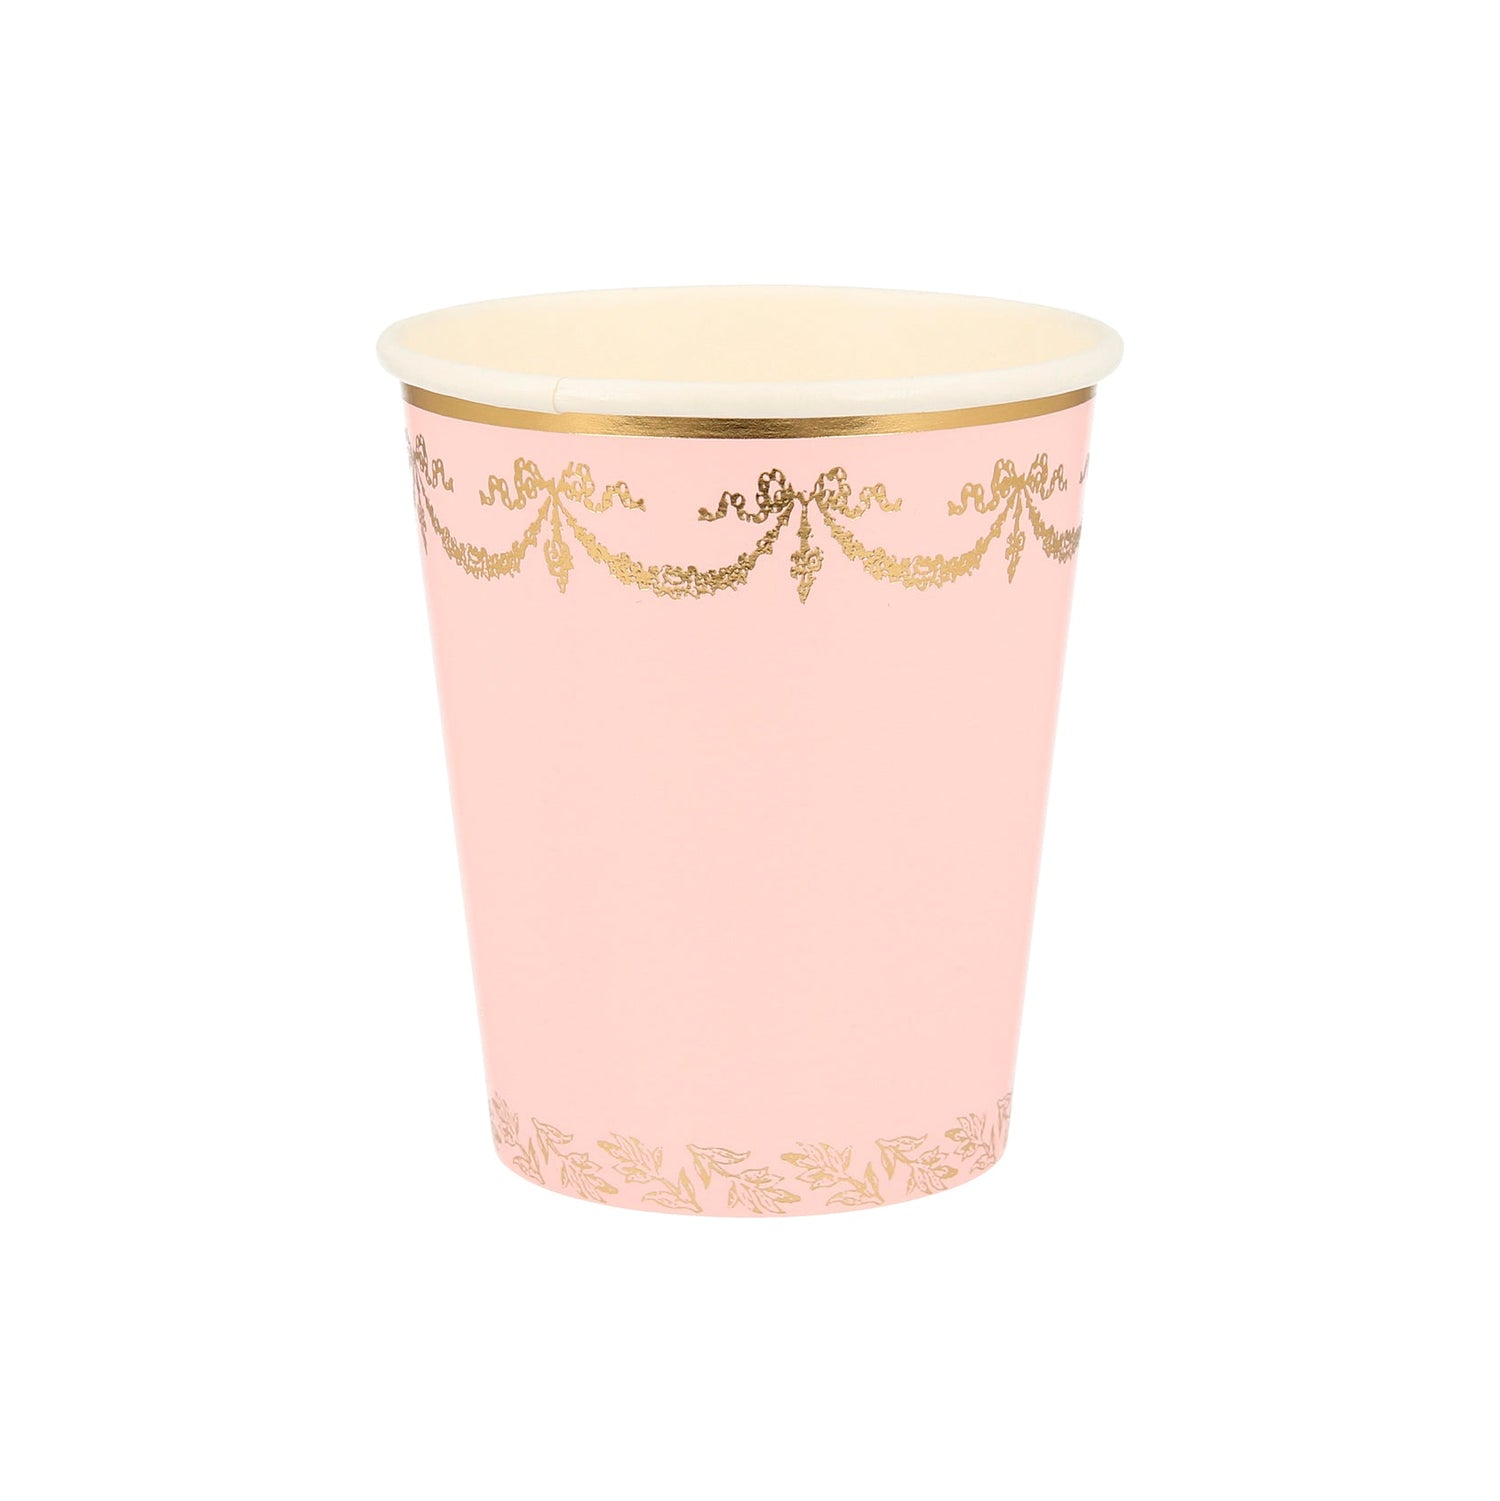 A Ladurée Paris cup with gold trim.